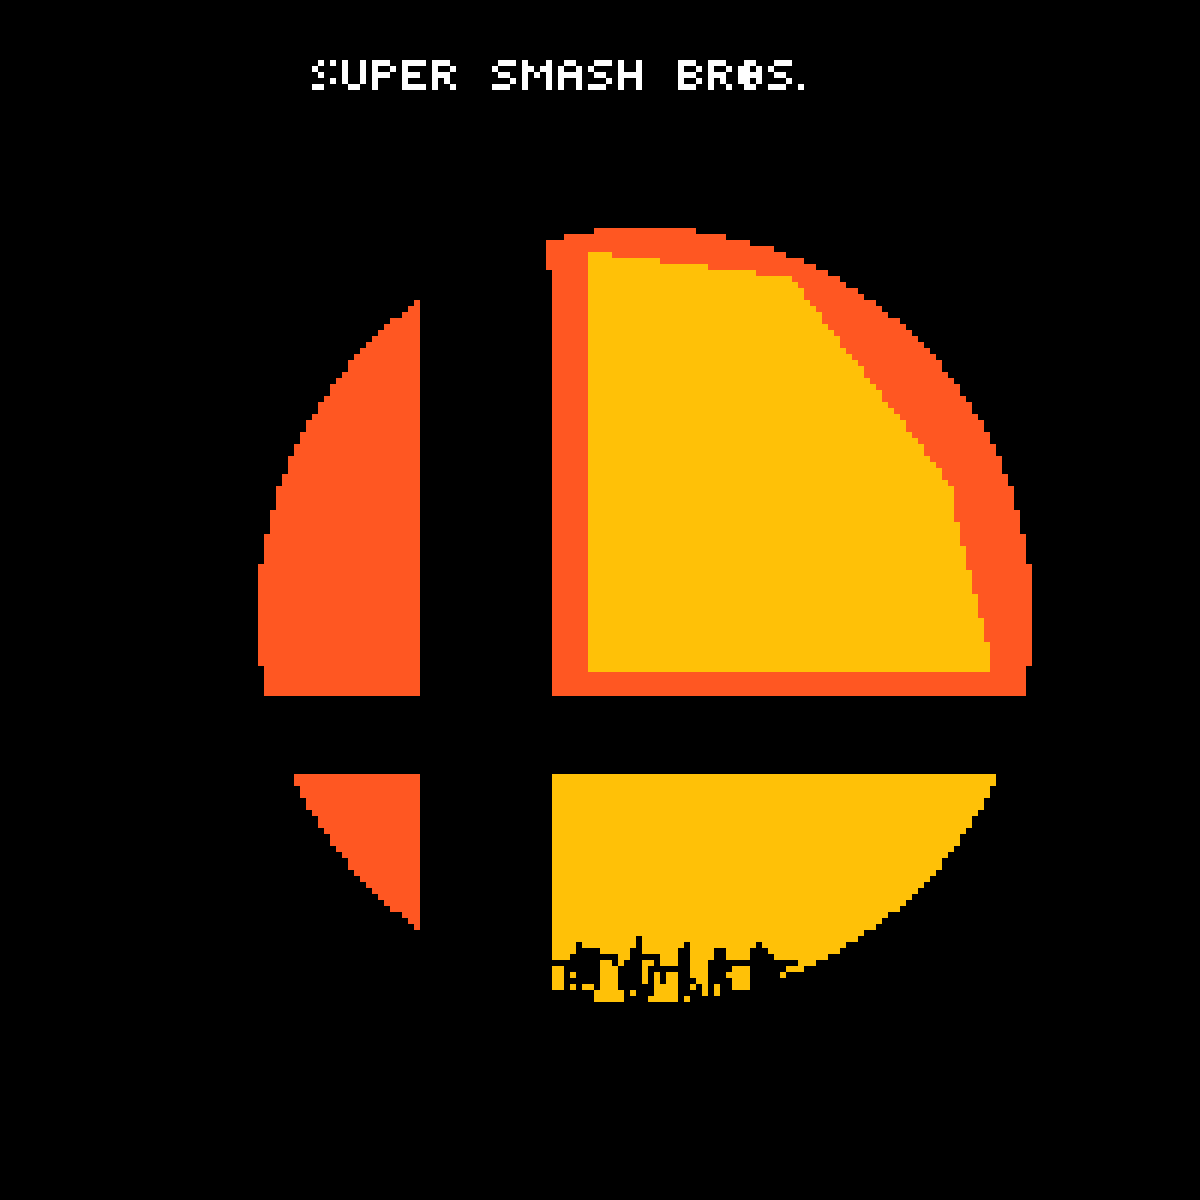 Smash Logo - Pixilart smash bros. logo (switch version)